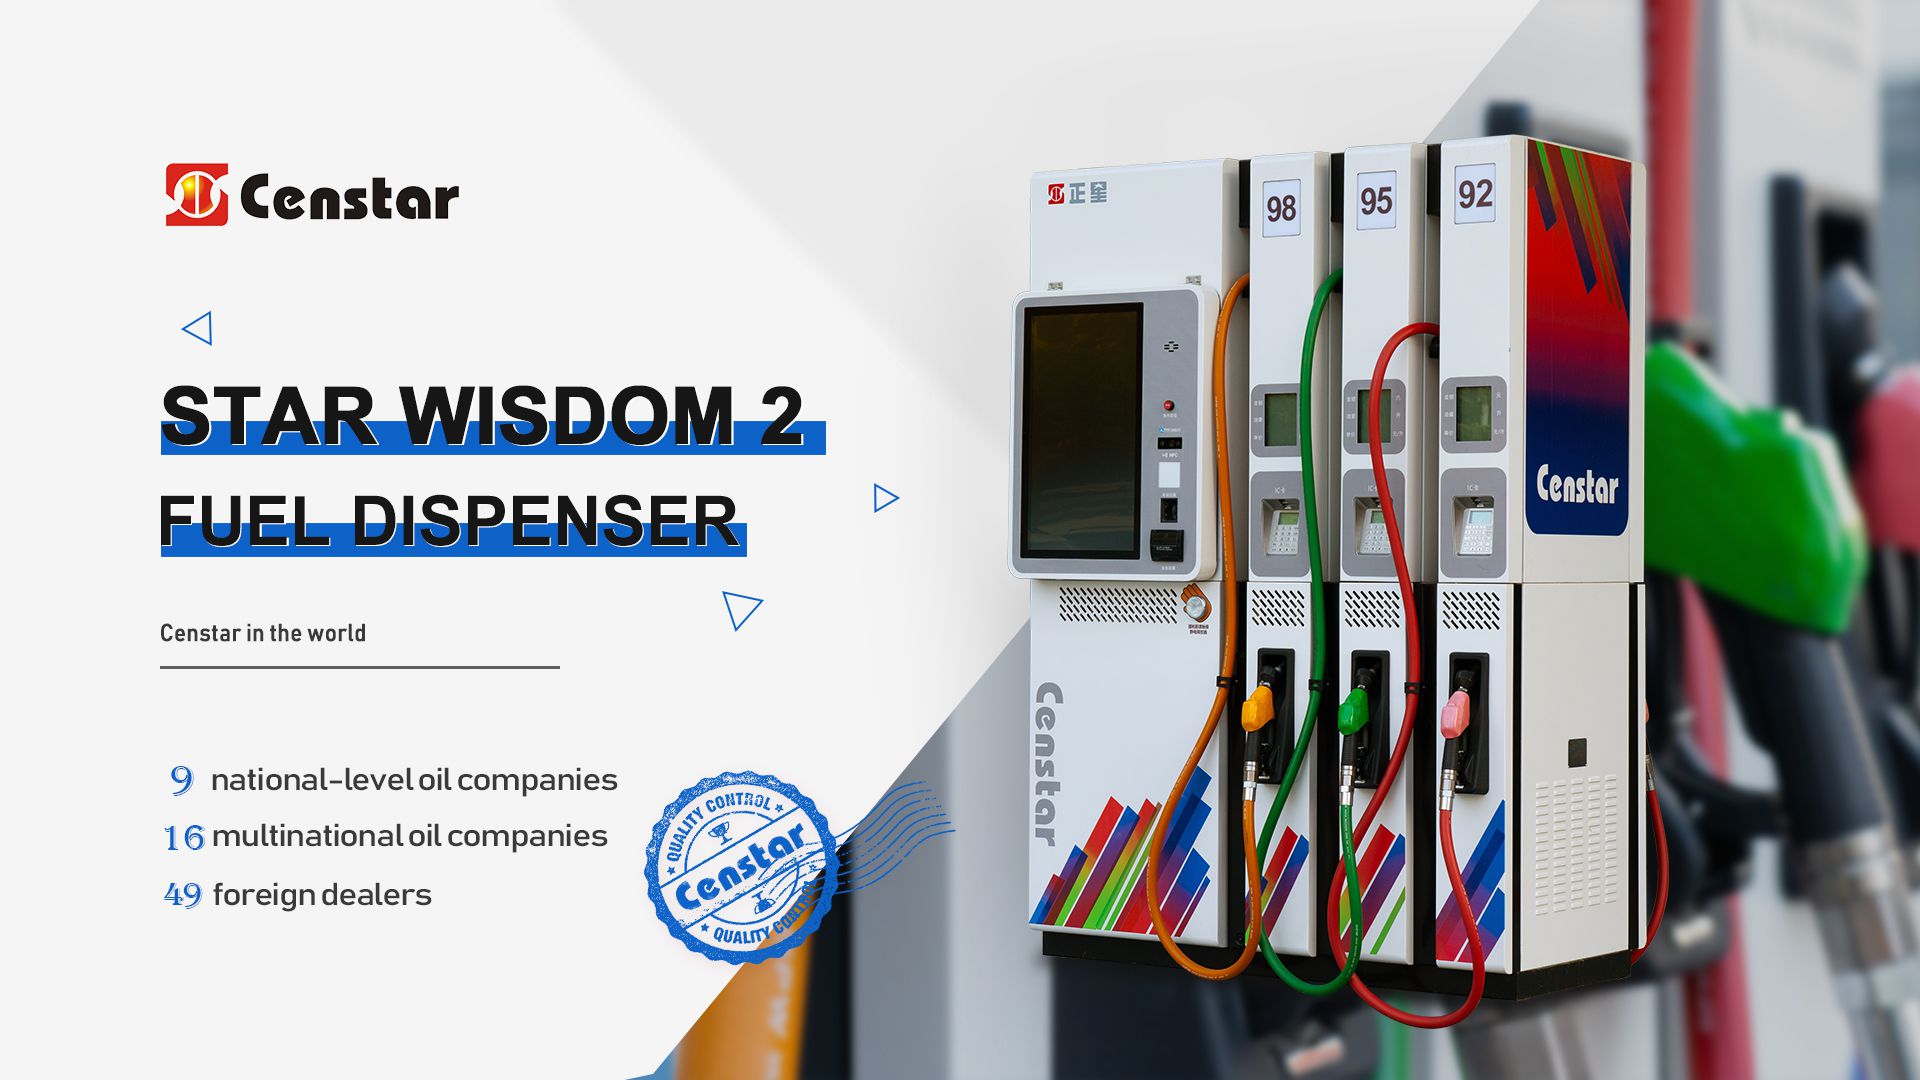 Censtar Star Wisdom 2 Series Fuel Dispenser